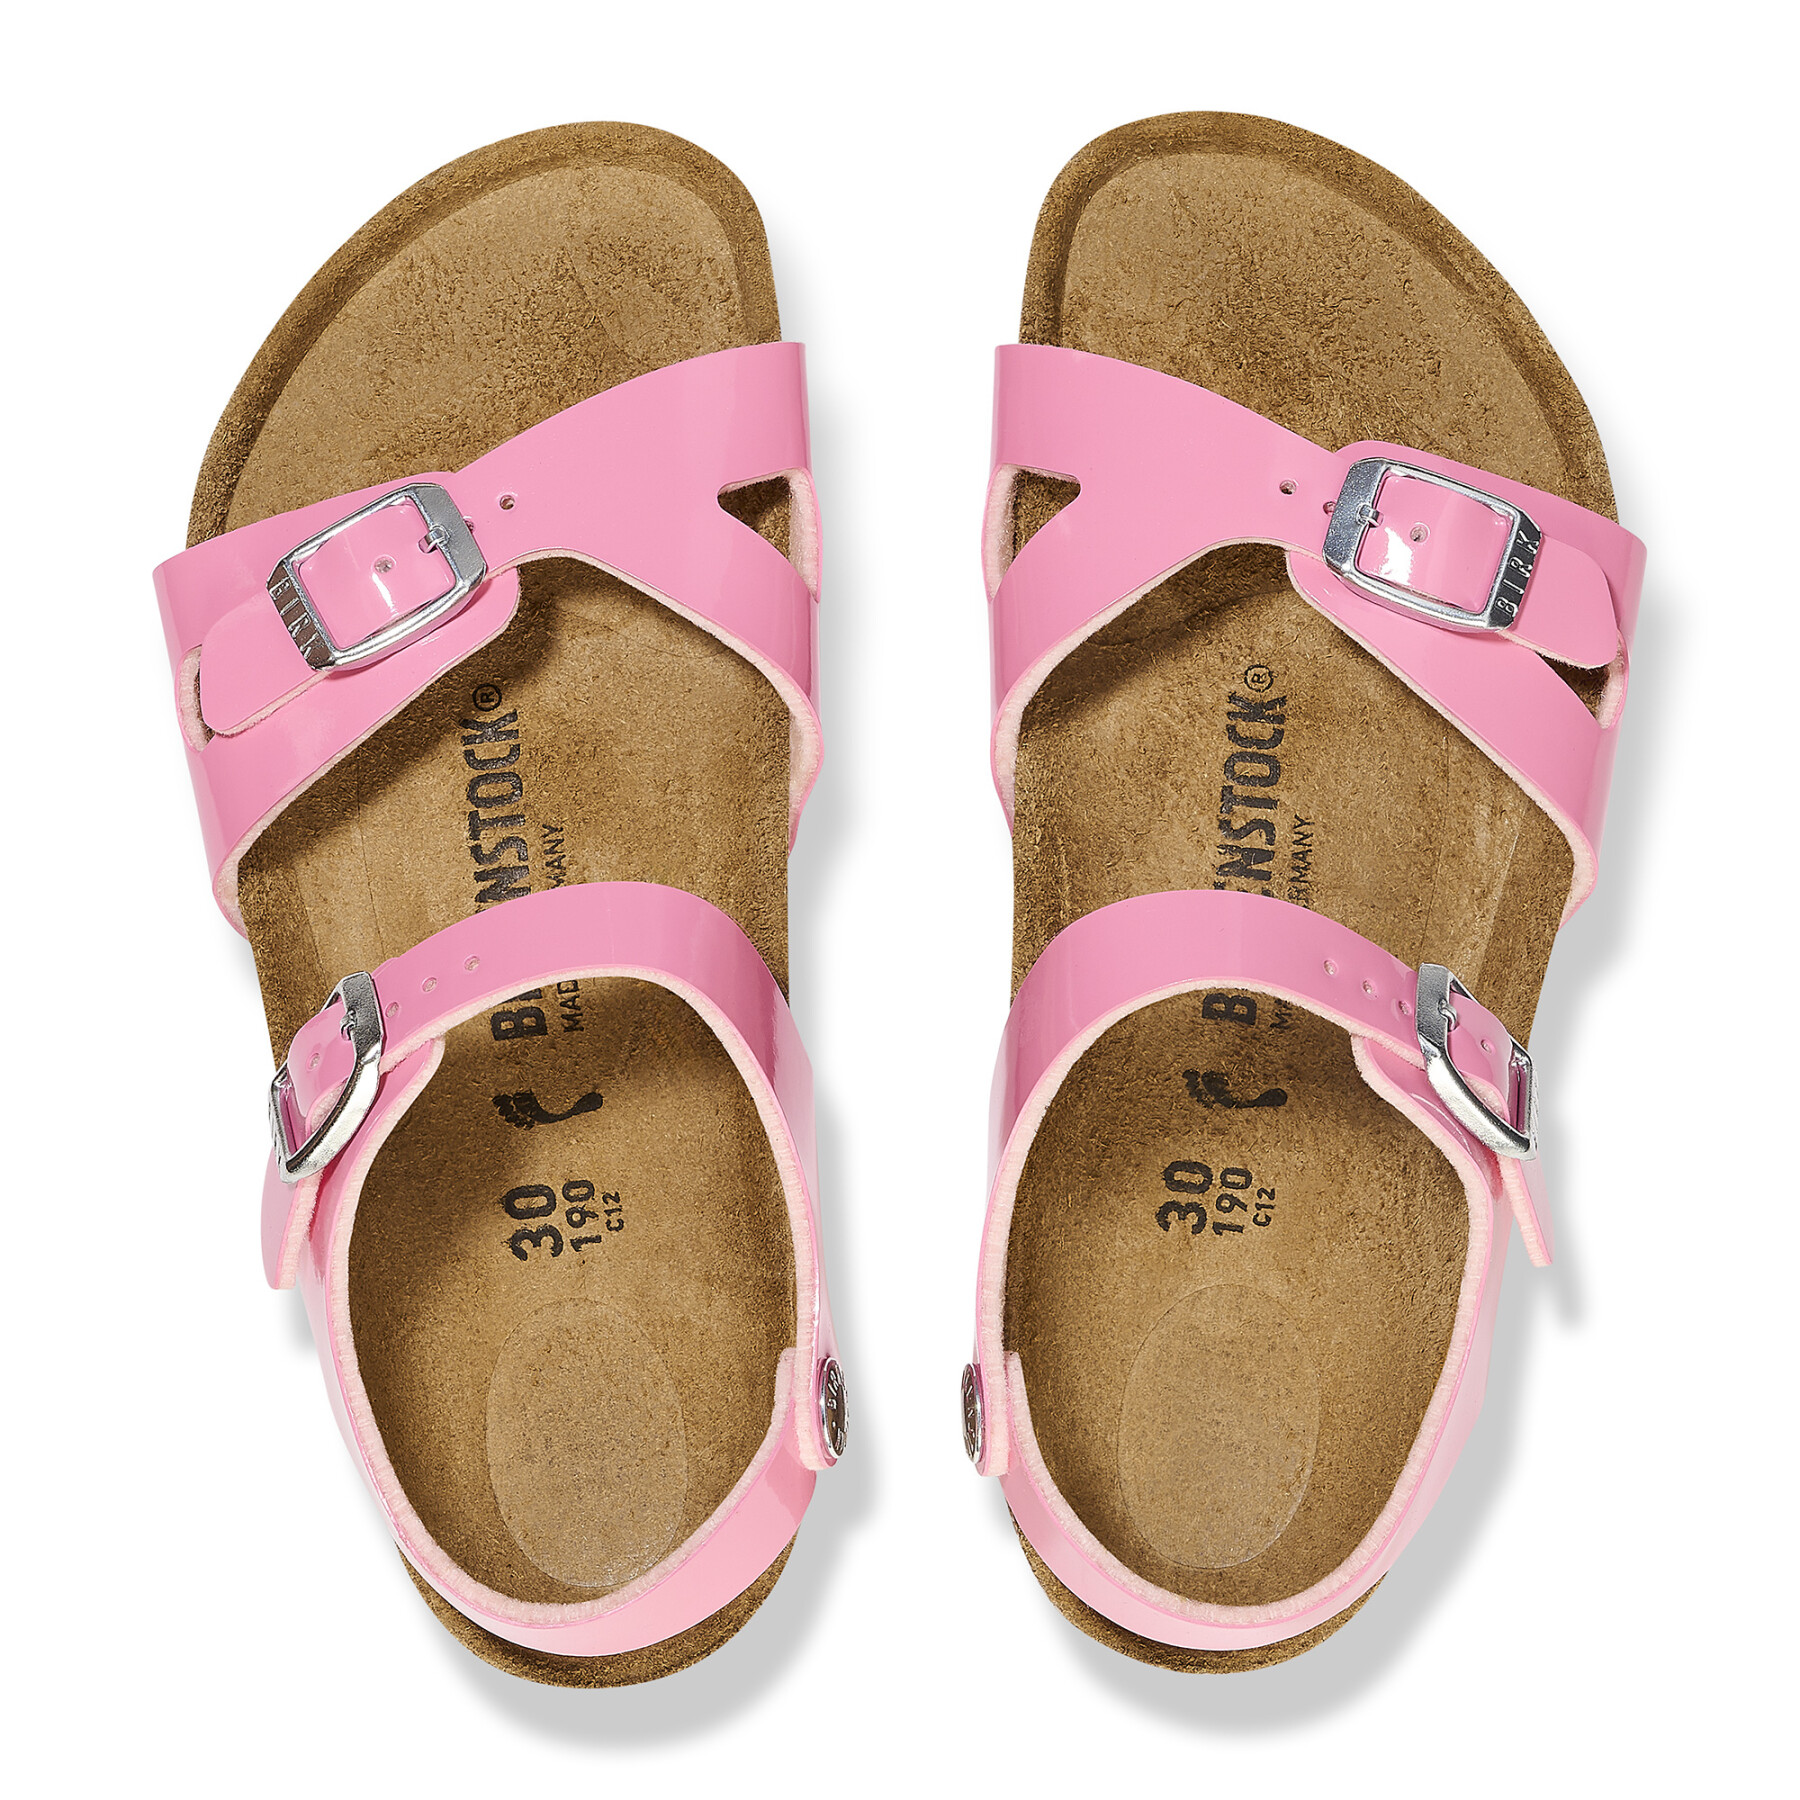 Women's sandals Birkenstock Rio Birko-Flor Patent